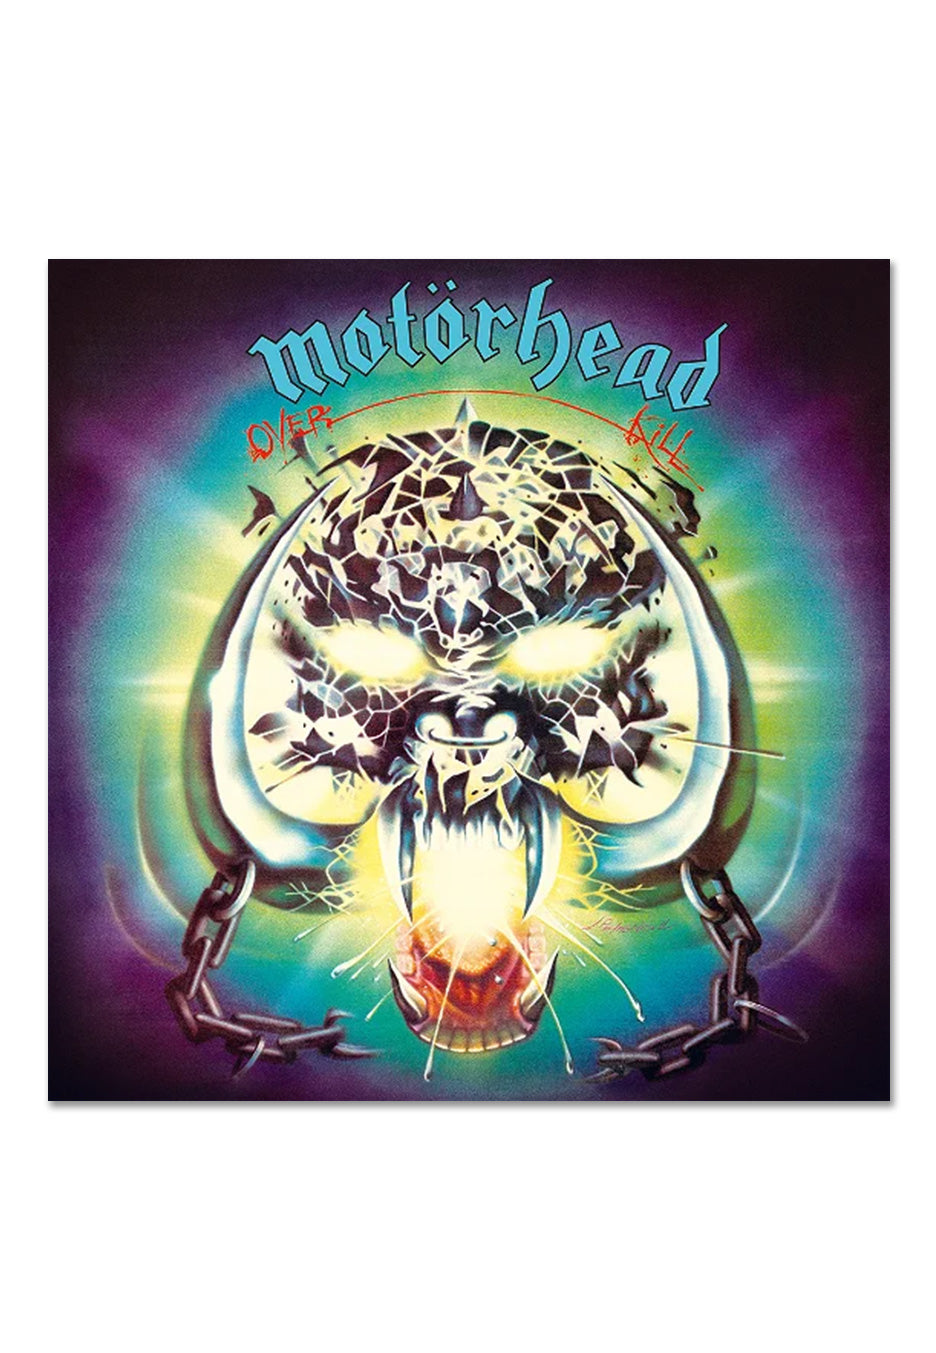 Motörhead - Overkill (40th Anniversary Edition) - 2 CD